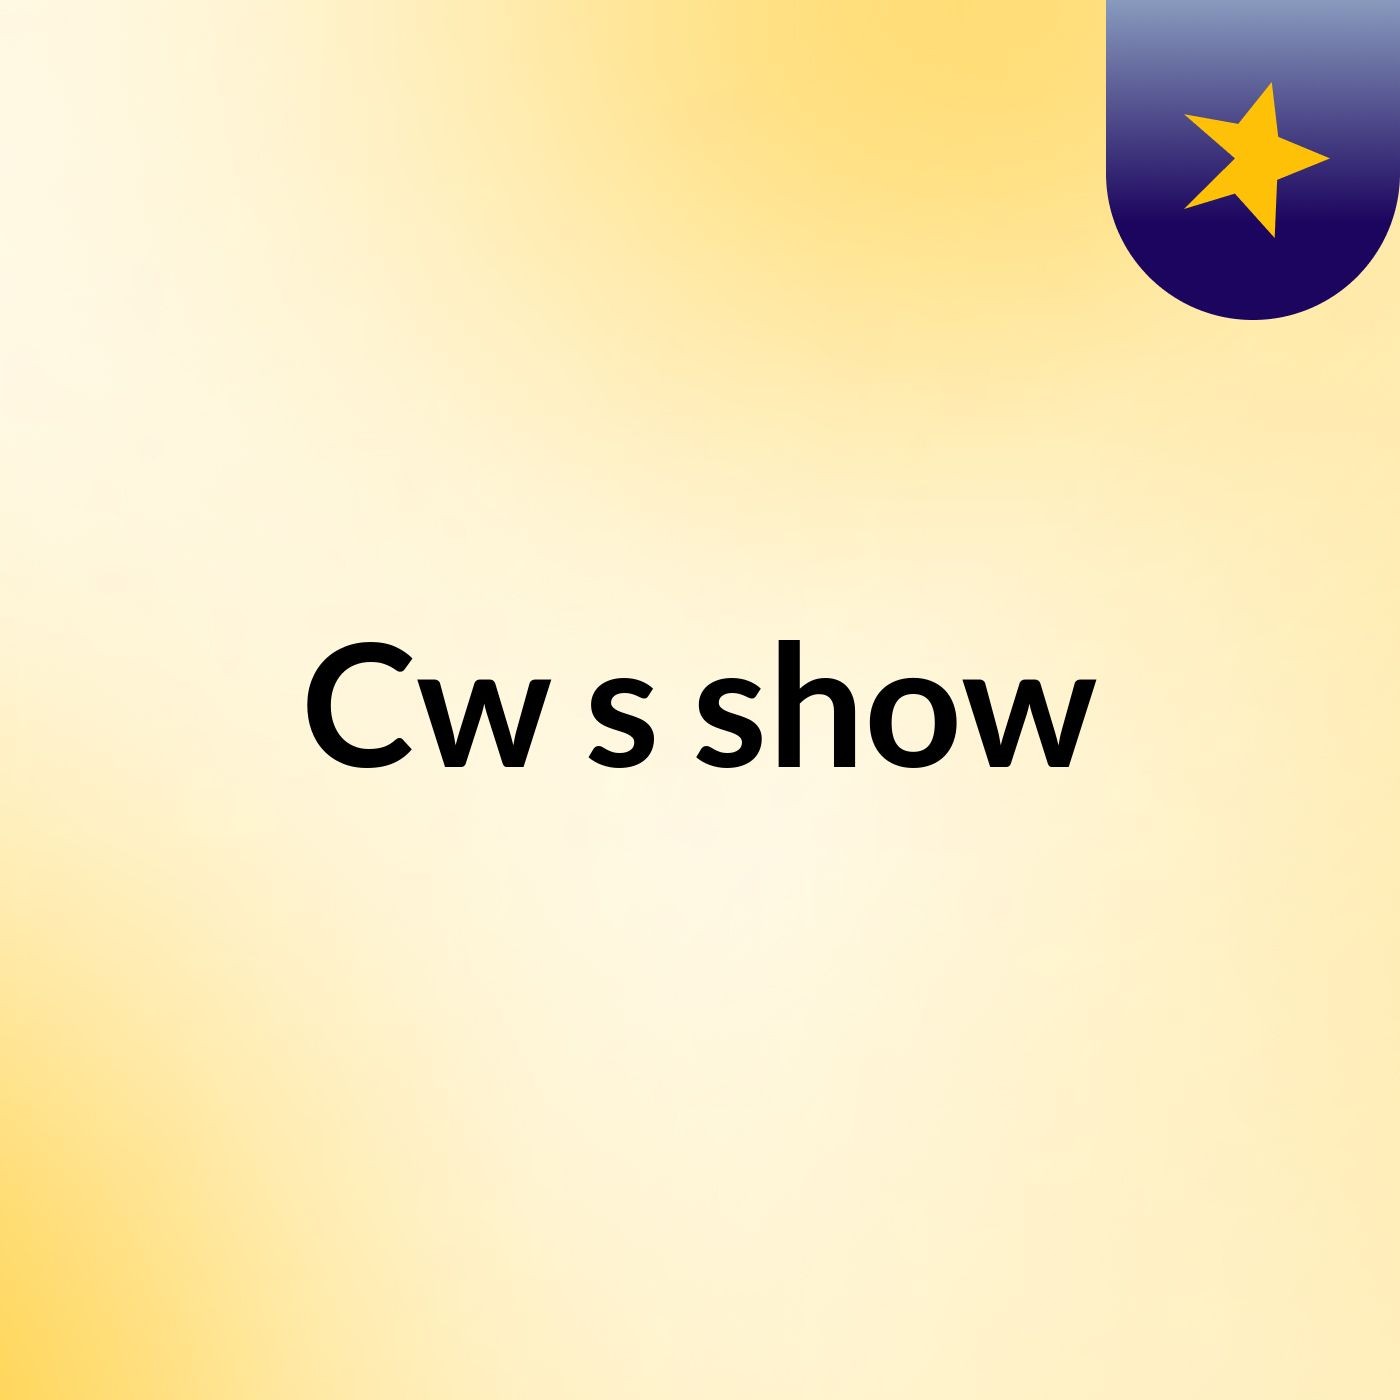 Cw's show